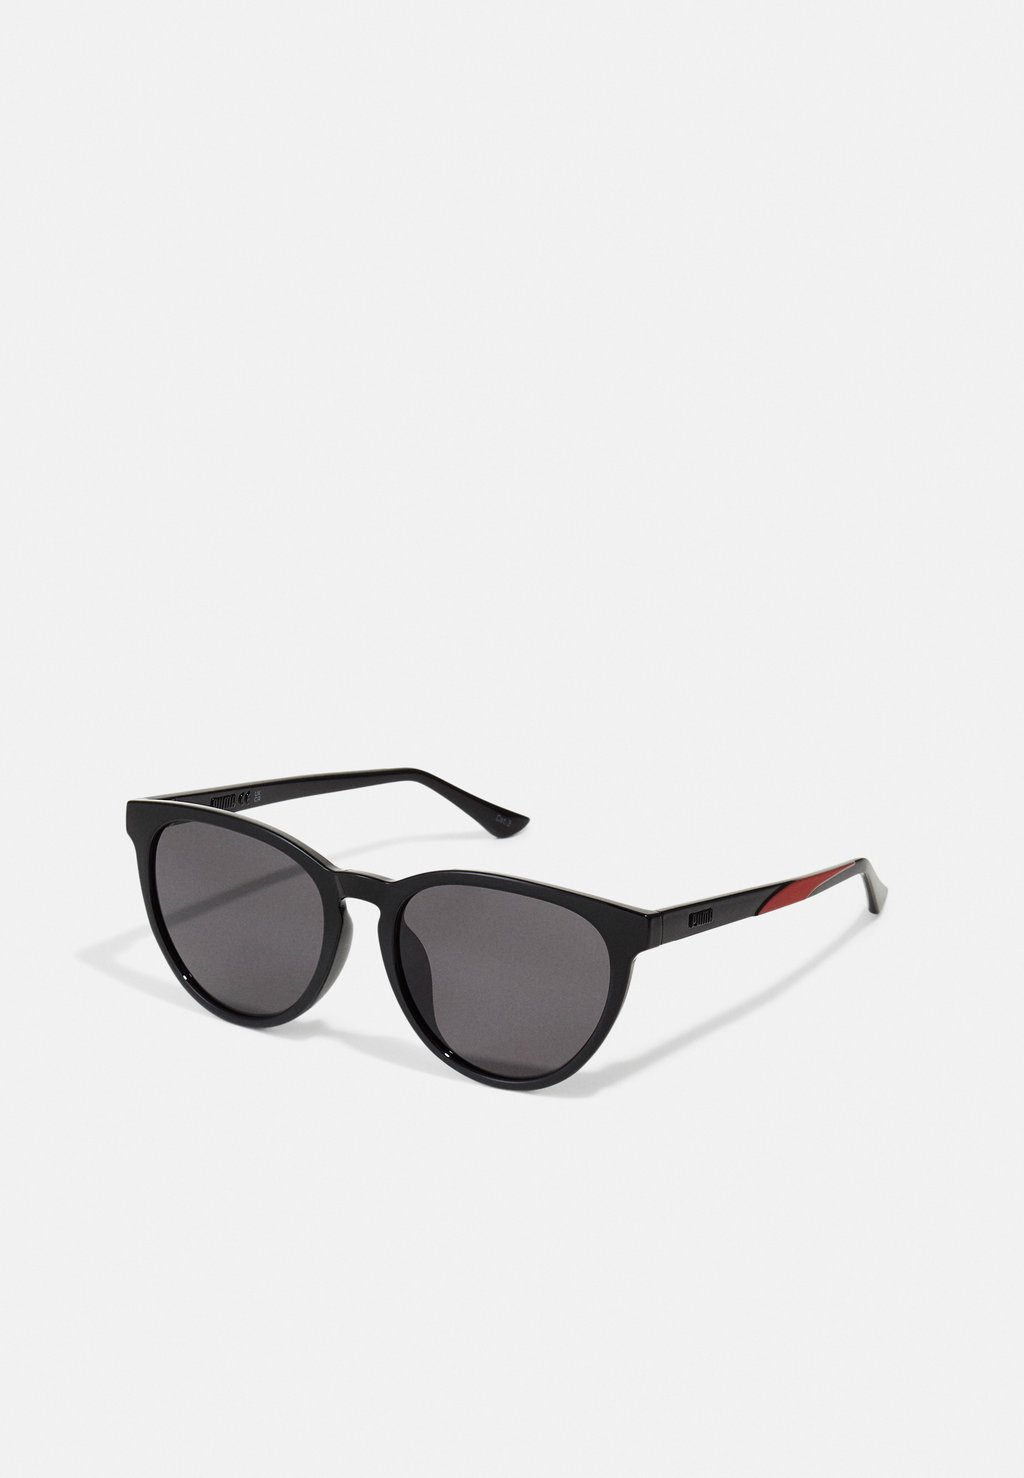 Солнцезащитные очки Puma, цвет black/smoke